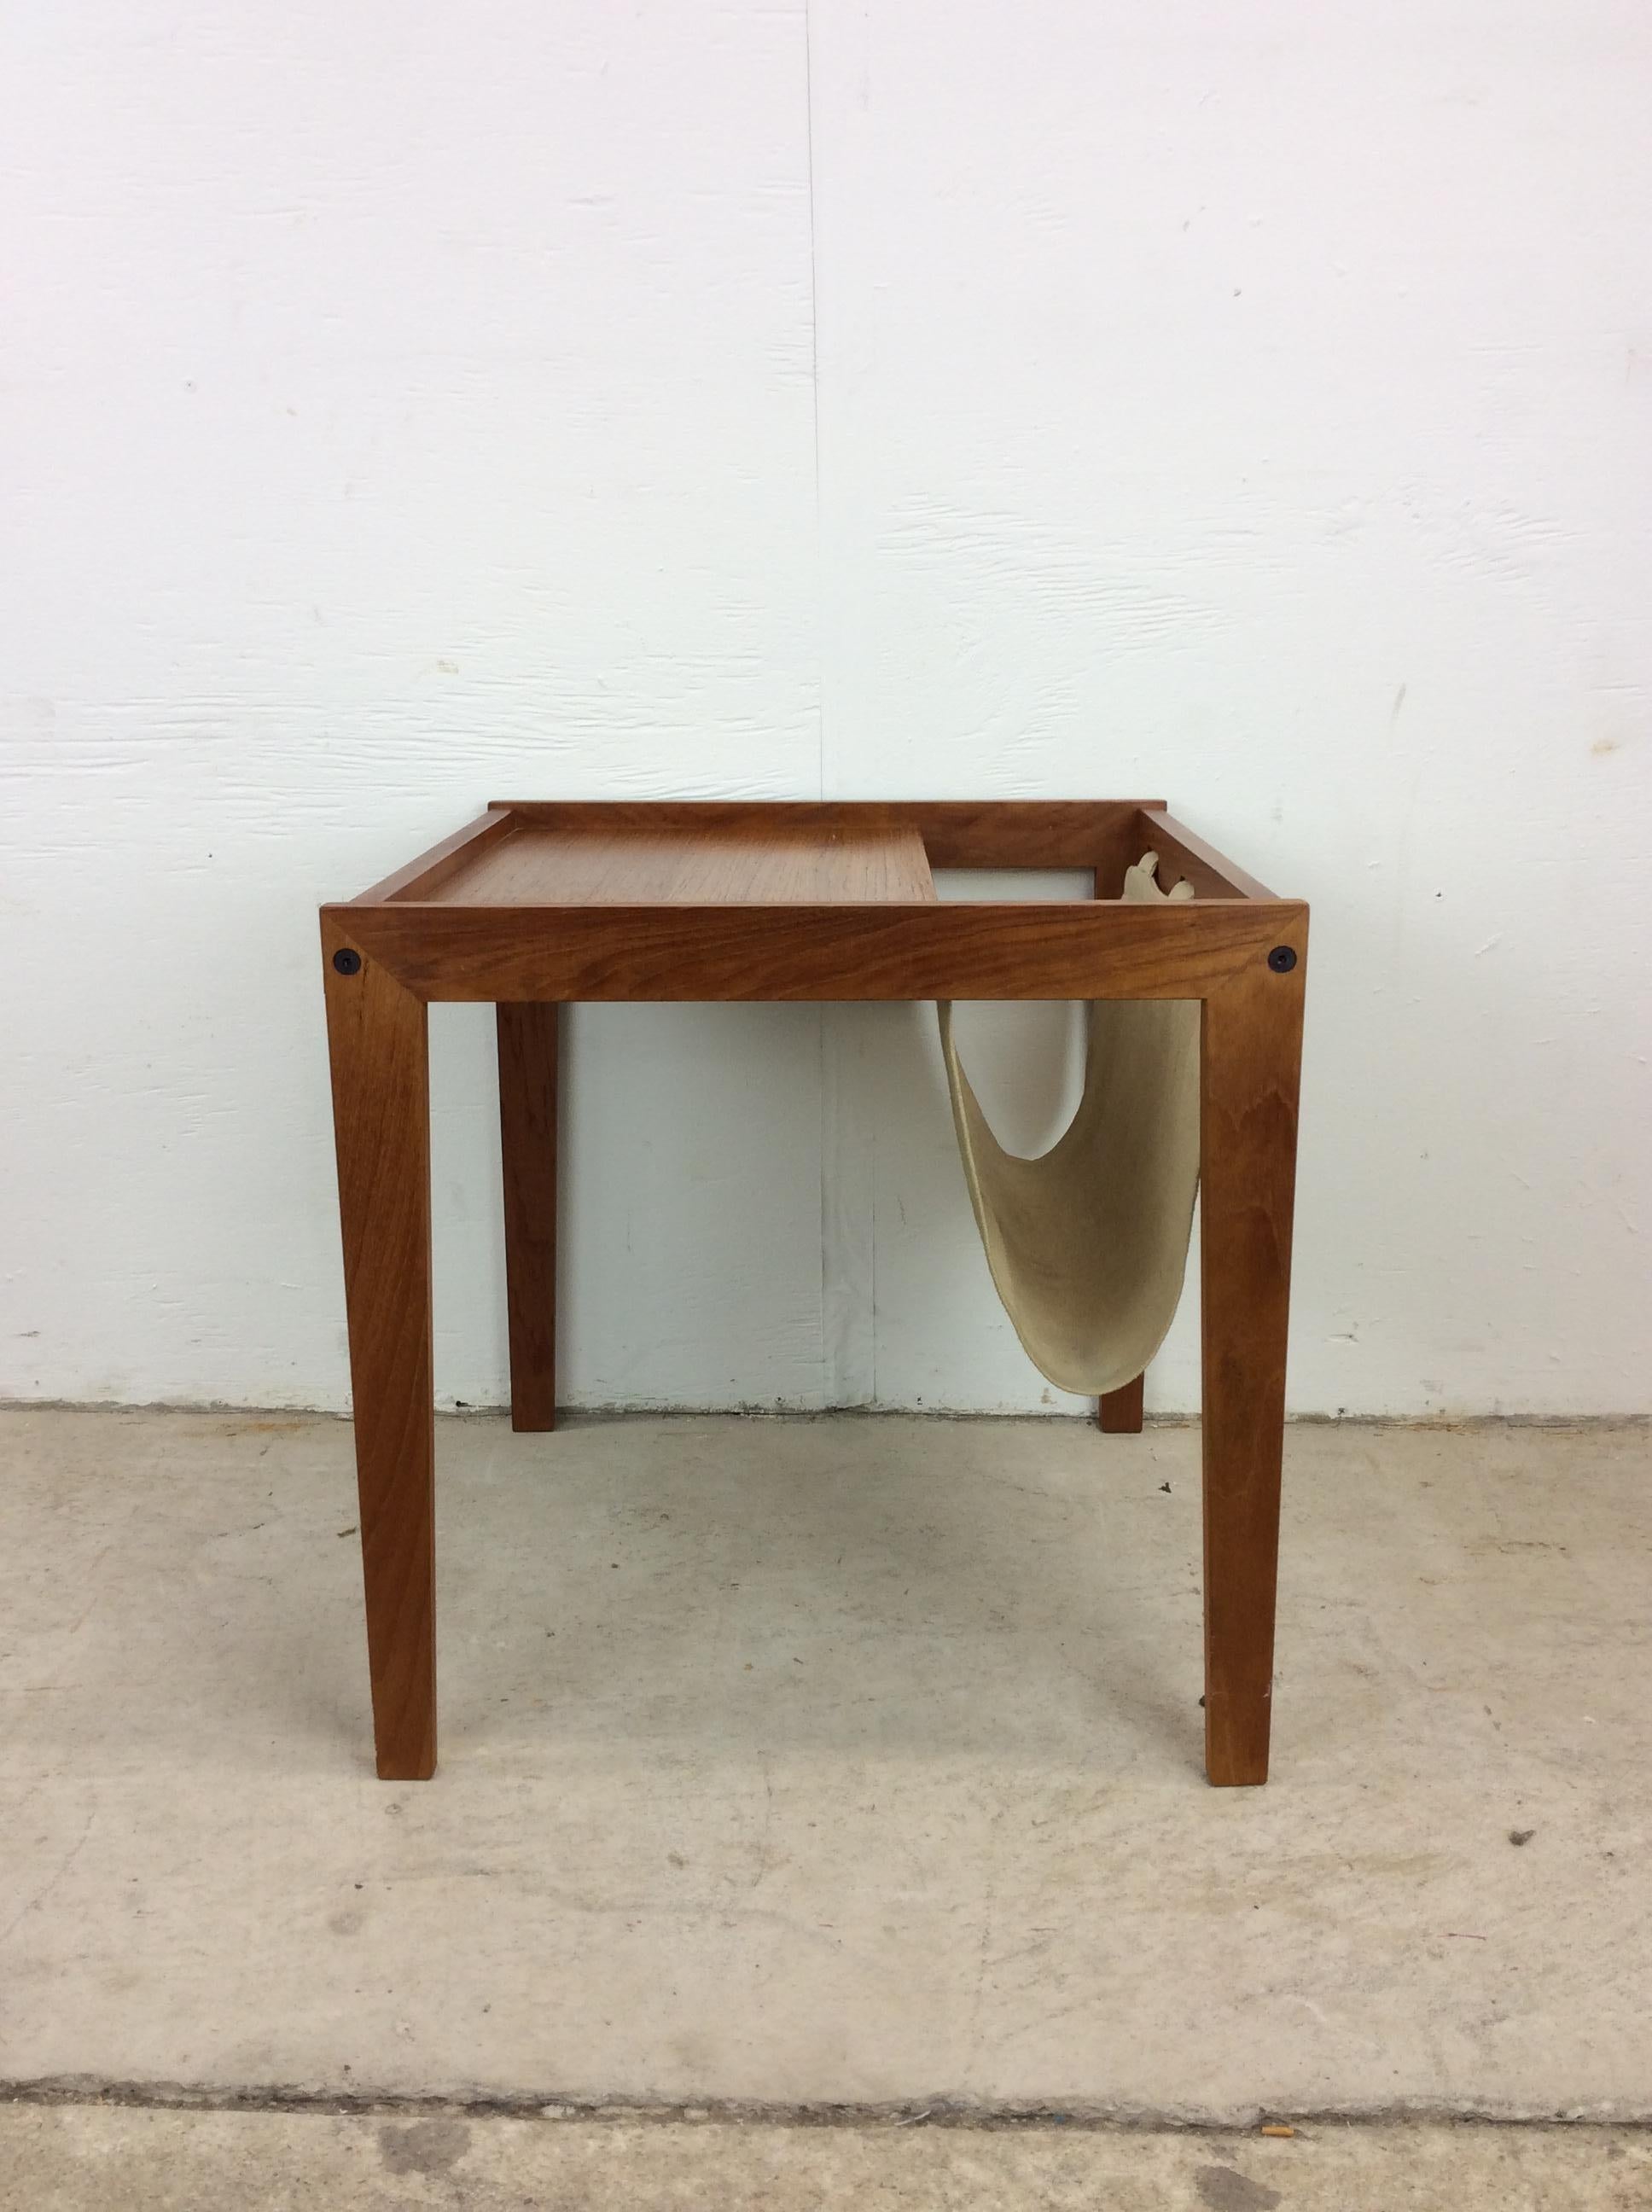 Dieser Tisch der dänischen Moderne ist aus massivem Teakholz gefertigt und verfügt über einen Zeitschriftenhalter aus Segeltuch und hohe, konische Beine.

Bitte schauen Sie sich unsere anderen Danish Modern Teak Angebote an!

Abmessungen: 18b 18d